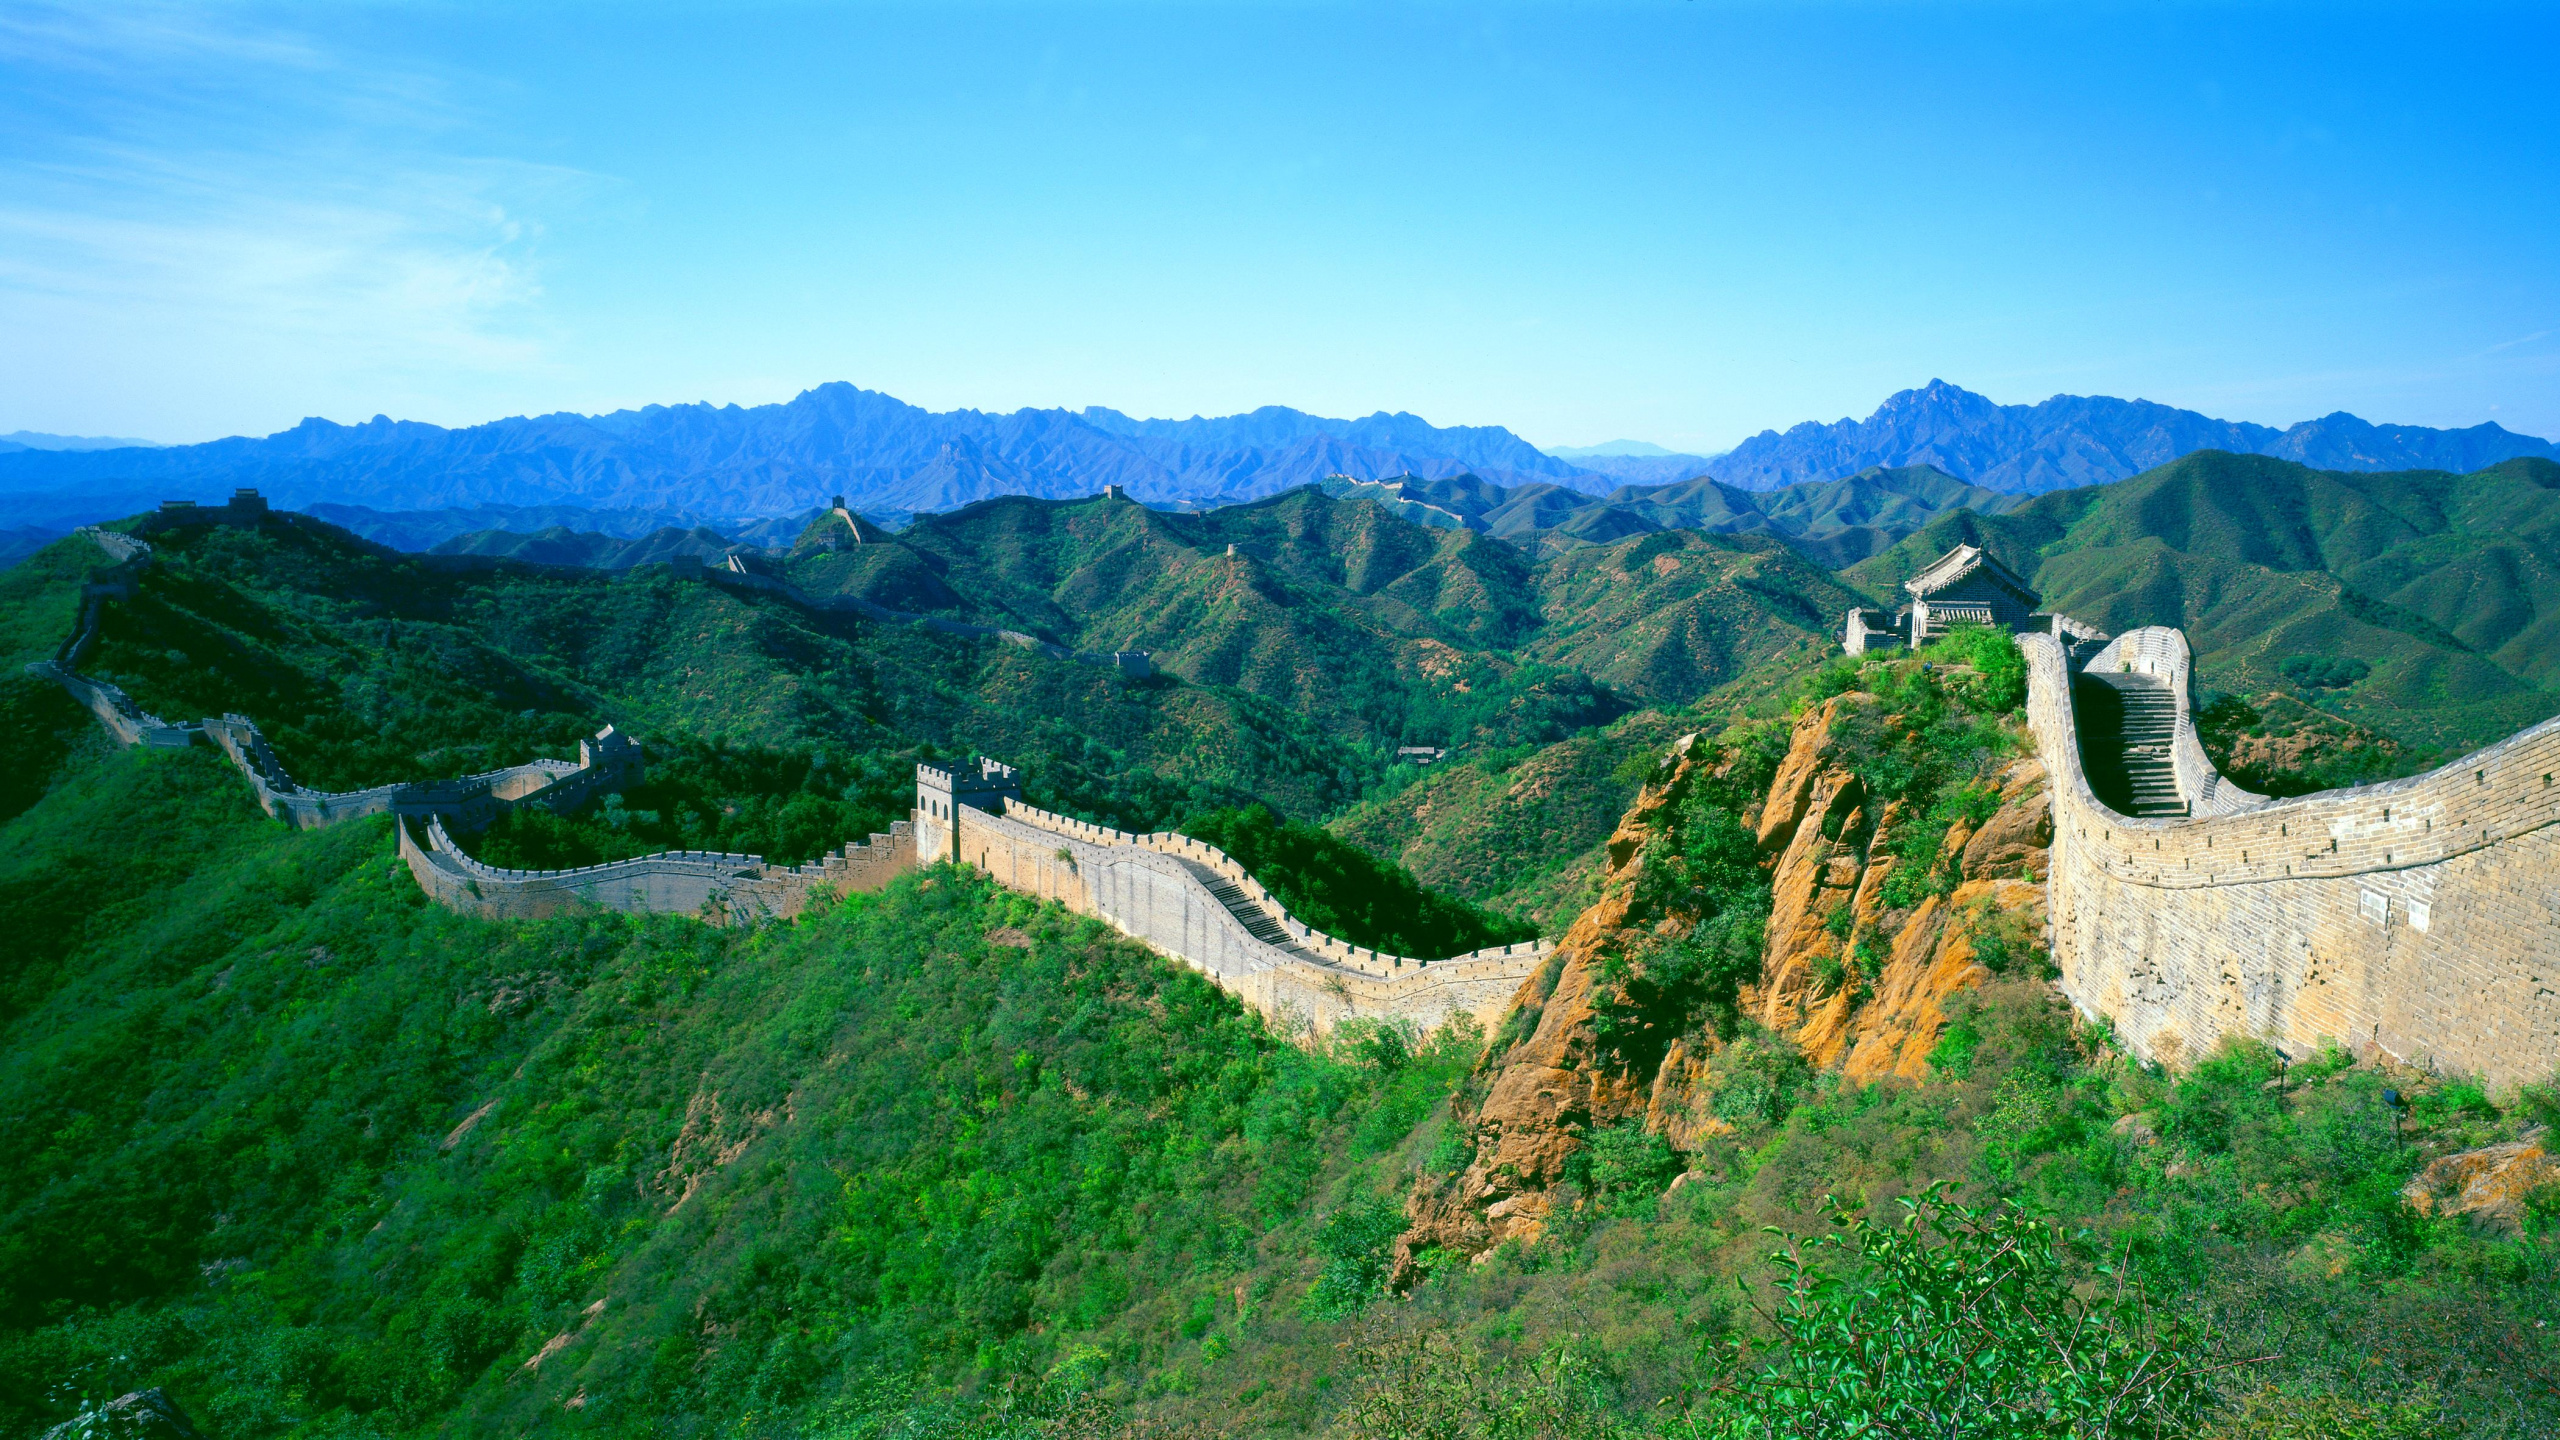 中国的长城, 慕田峪, 多山的地貌, 山站, 山脉 壁纸 2560x1440 允许